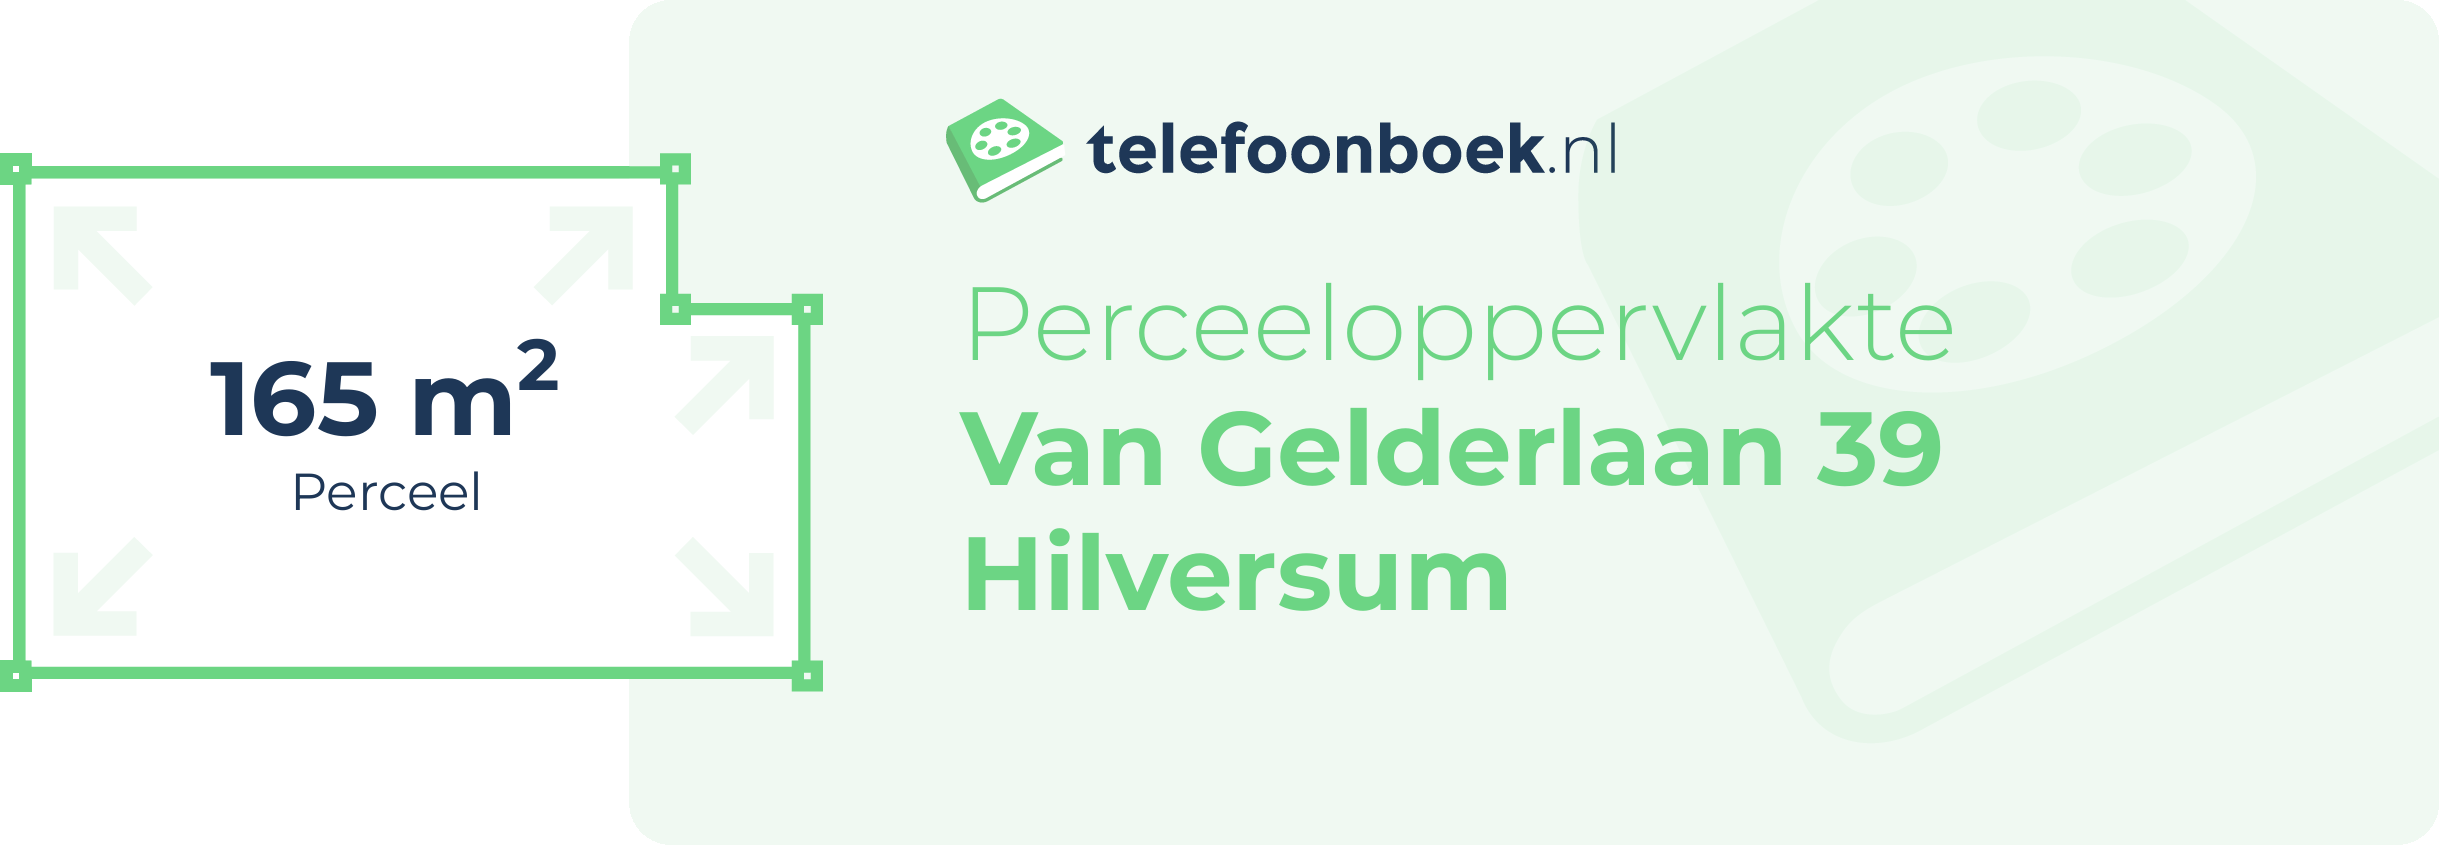 Perceeloppervlakte Van Gelderlaan 39 Hilversum